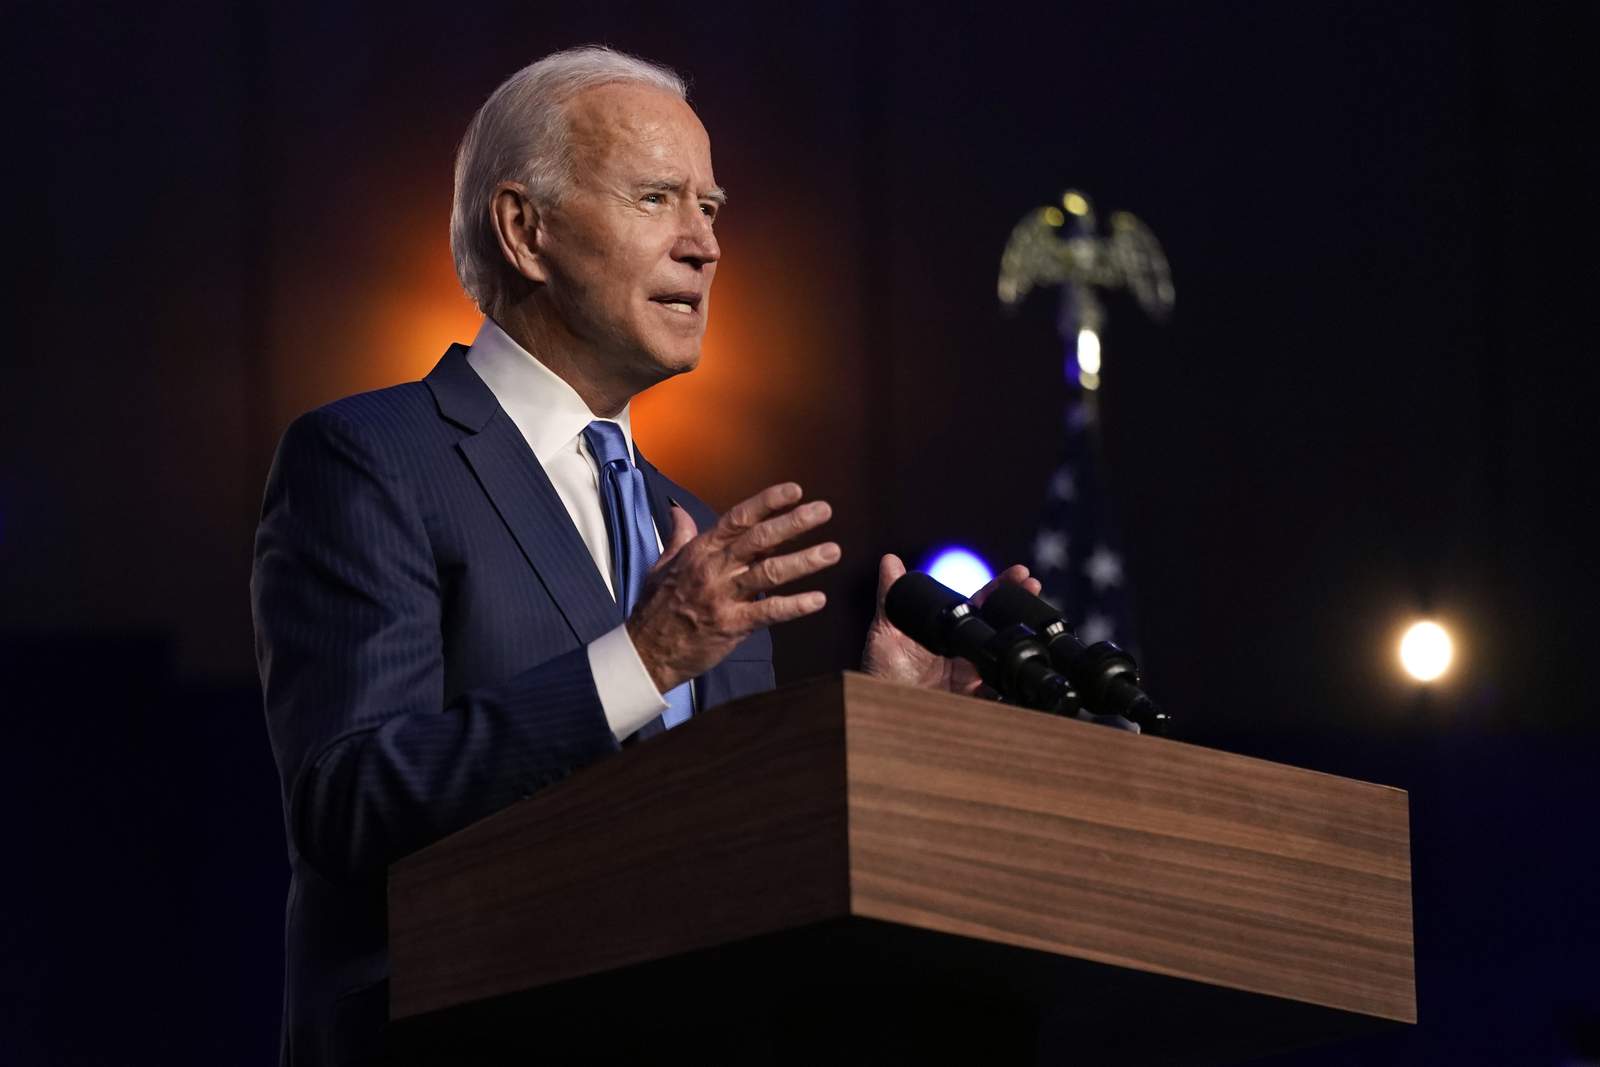 Joe Biden wins 2020 presidential election, AP projects